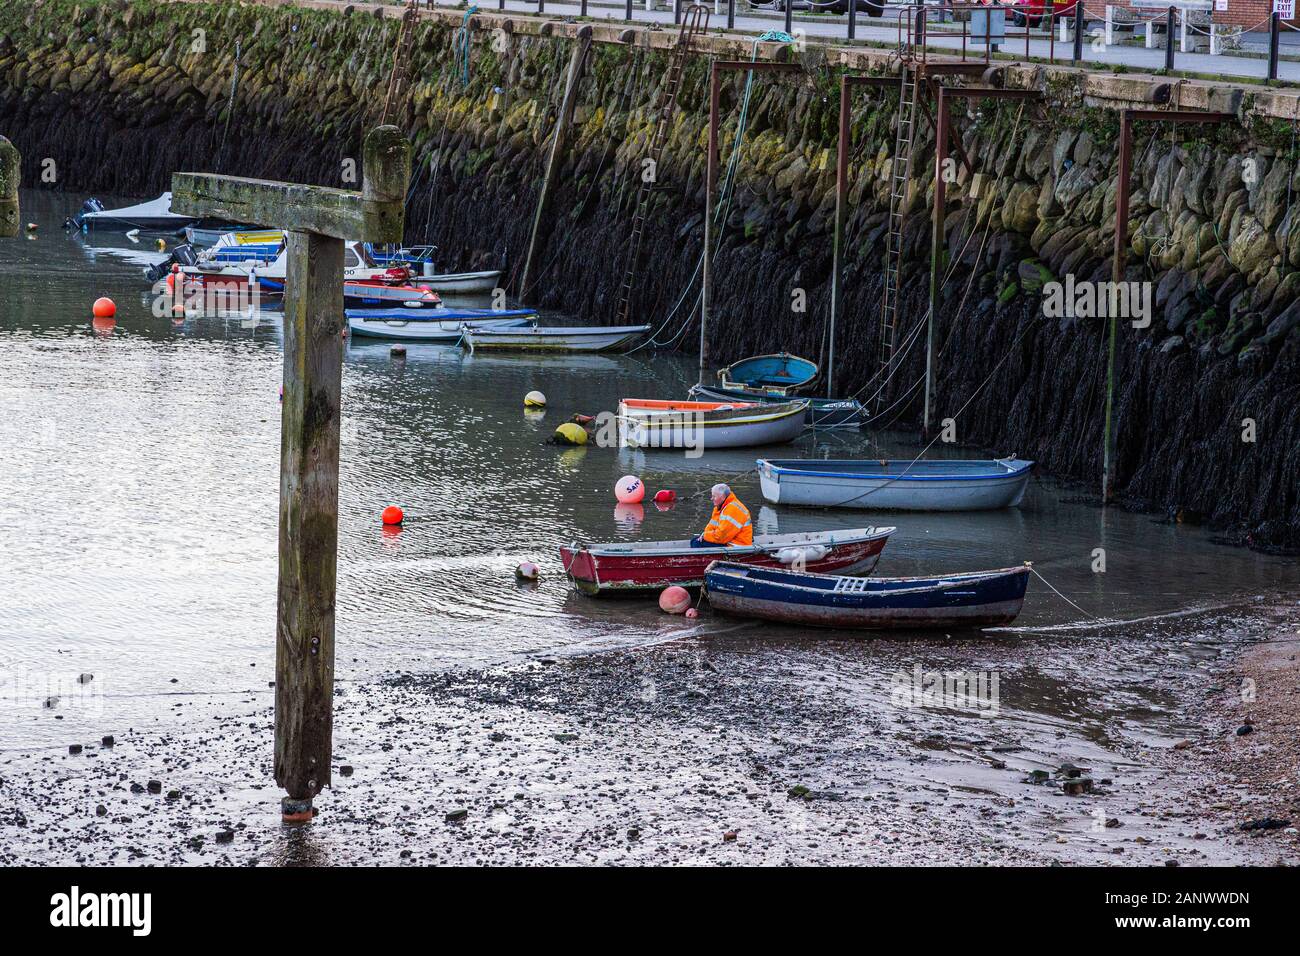 Folkestone, Kent. GROSSBRITANNIEN. Verschiedene Farben von Ruderbooten, die im Hafen von Folkestone gegen mit Algen bedeckte Felsen gefesselt sind. Stockfoto